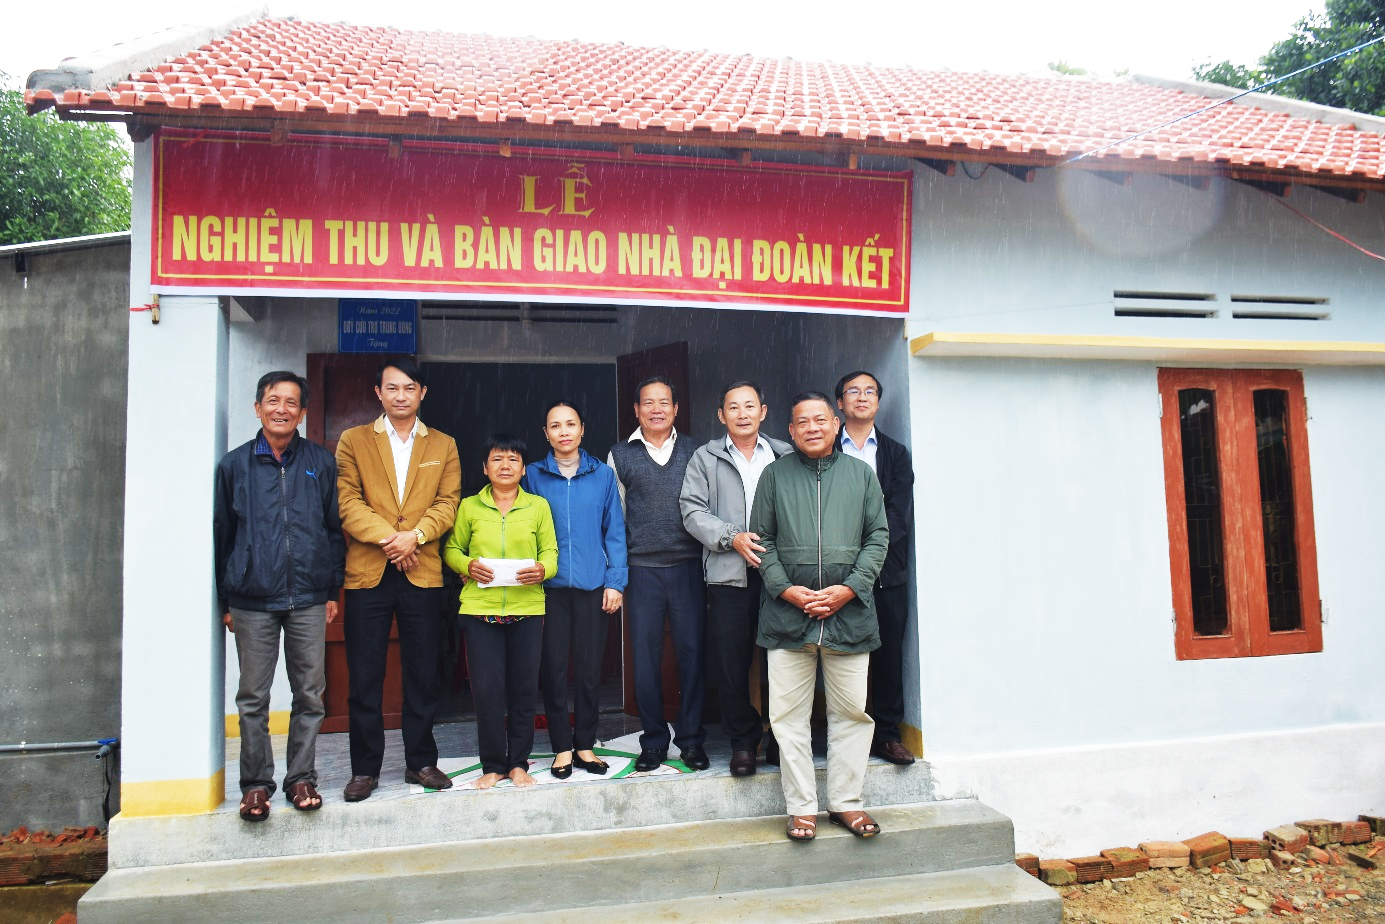 Uỷ ban MTTQ Việt Nam huyện Sơn Tịnh nghiệm thu, bàn giao nhà Đại đoàn kết cho hộ nghèo ở xã Tịnh Bình